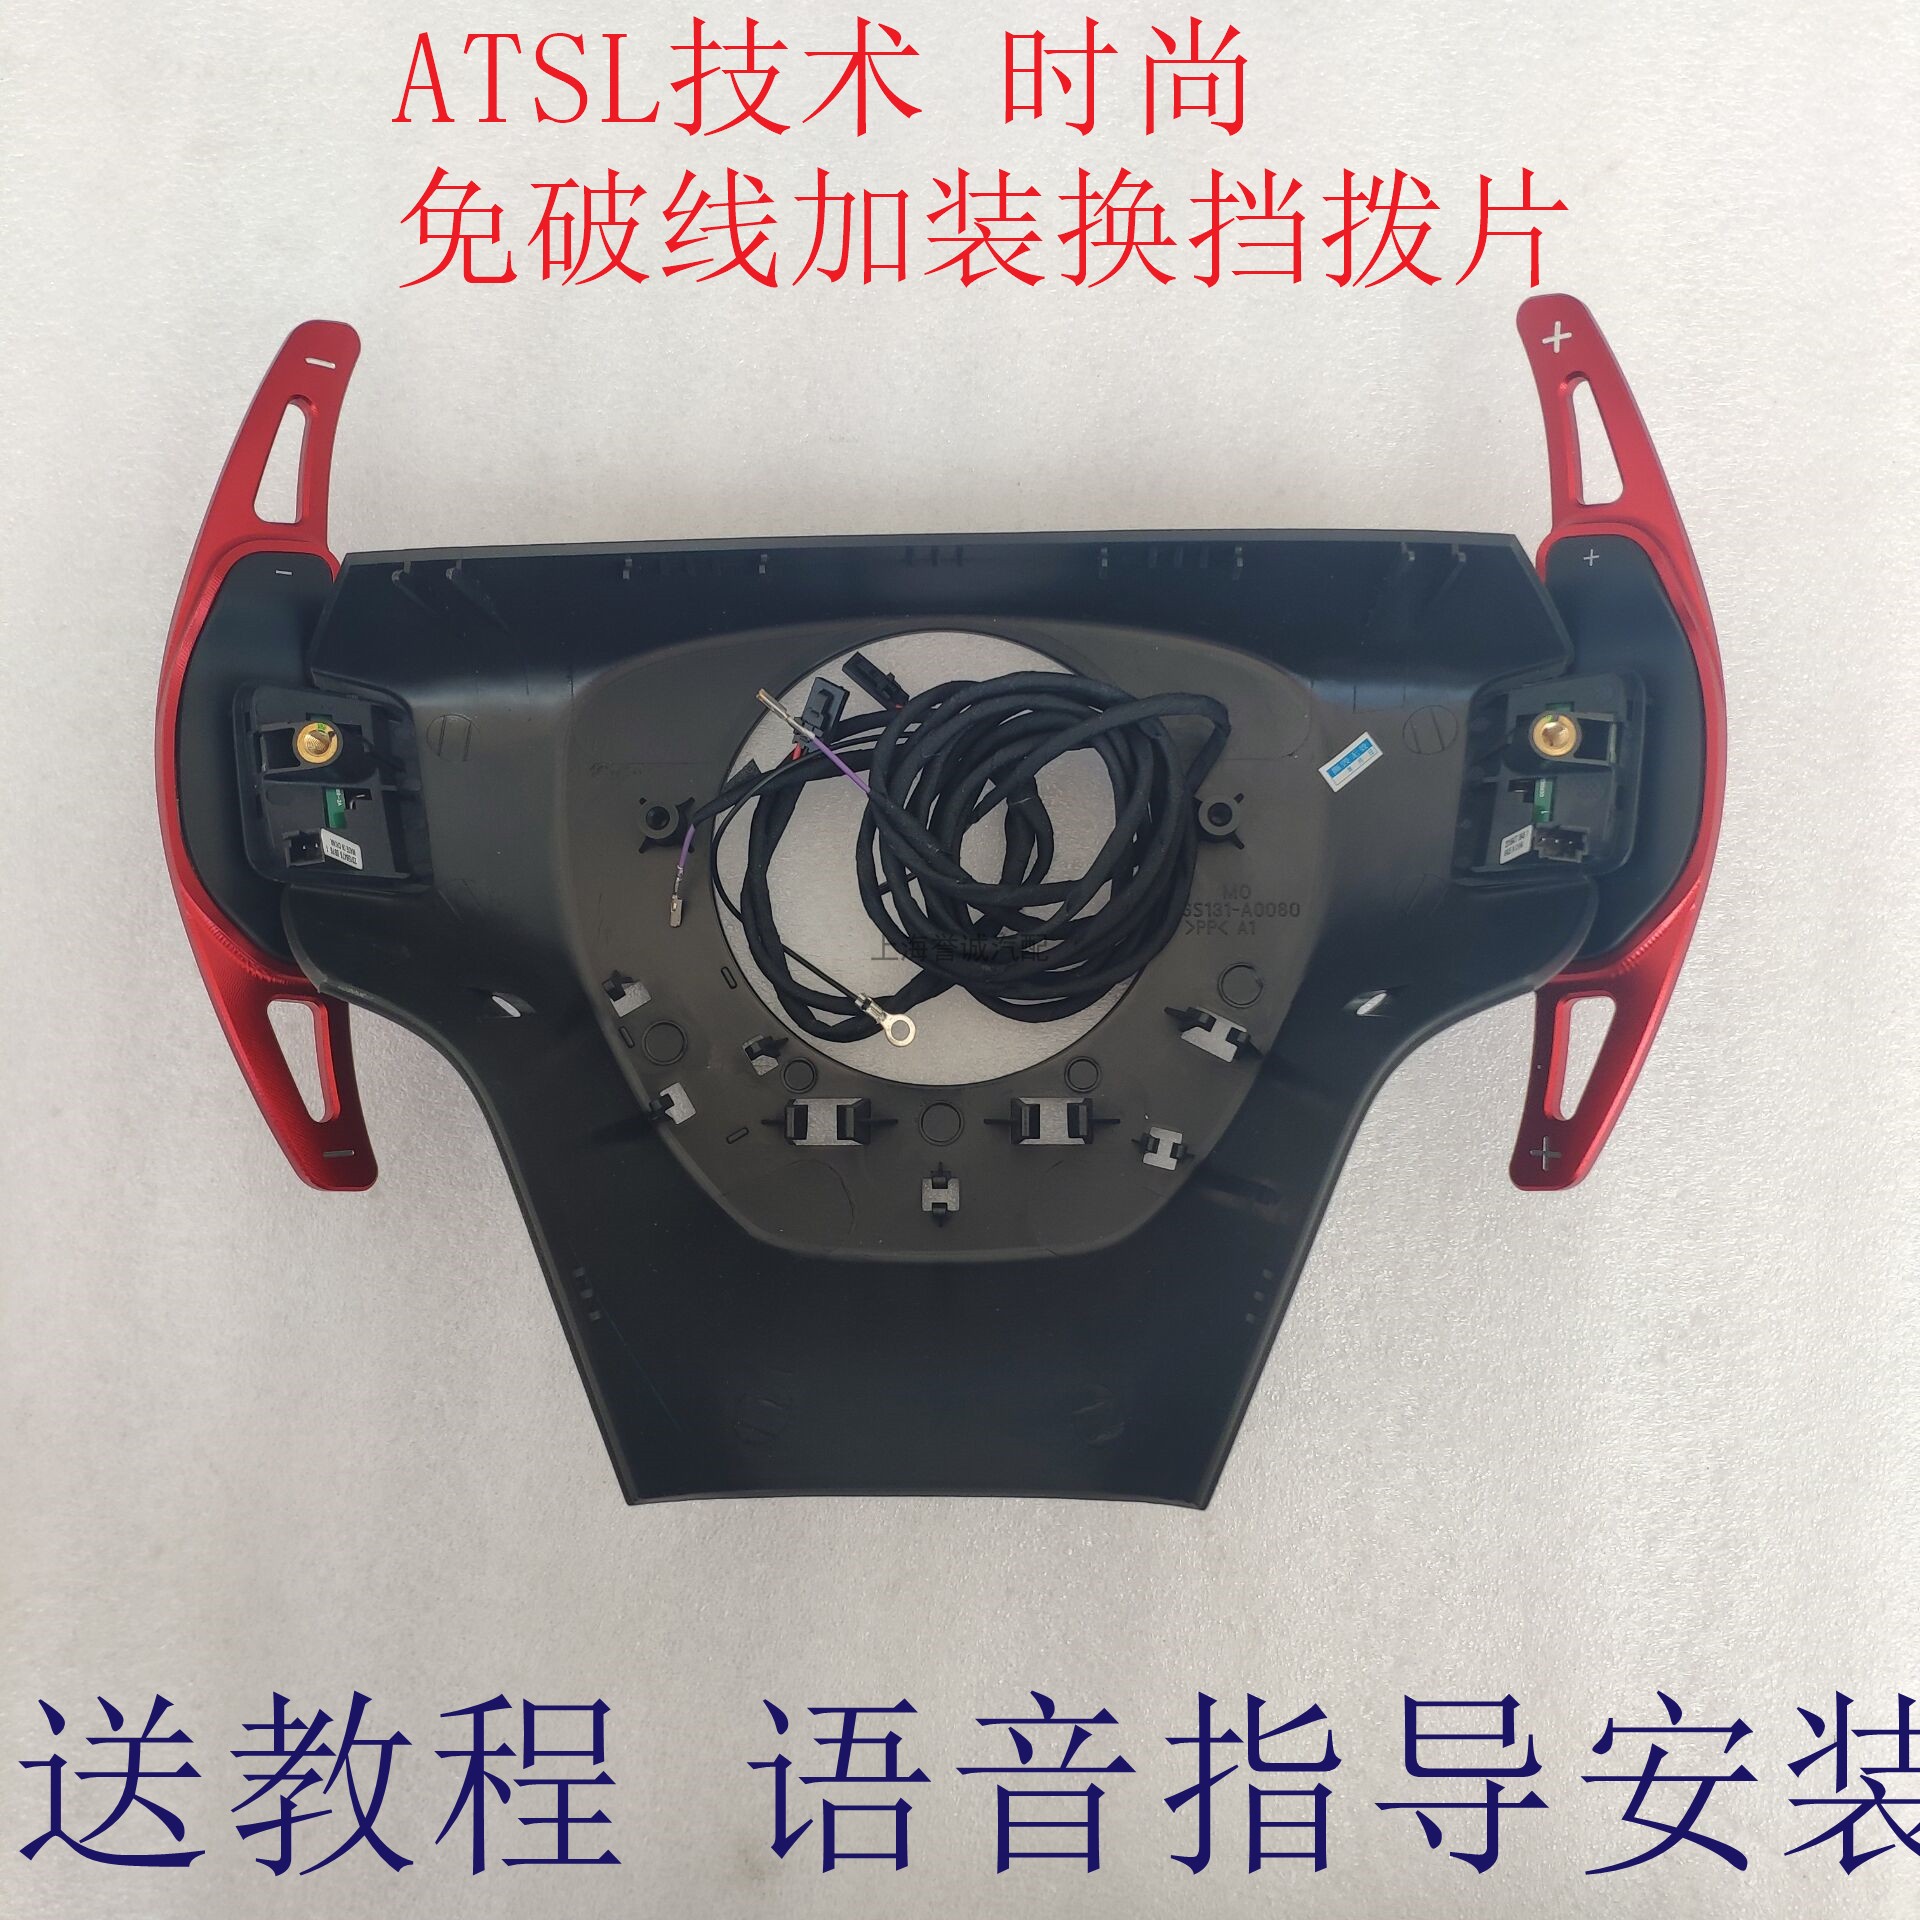 凯迪拉克 ATSL ATS技术时尚加装换挡拨片 加装换挡改装拨片清仓价